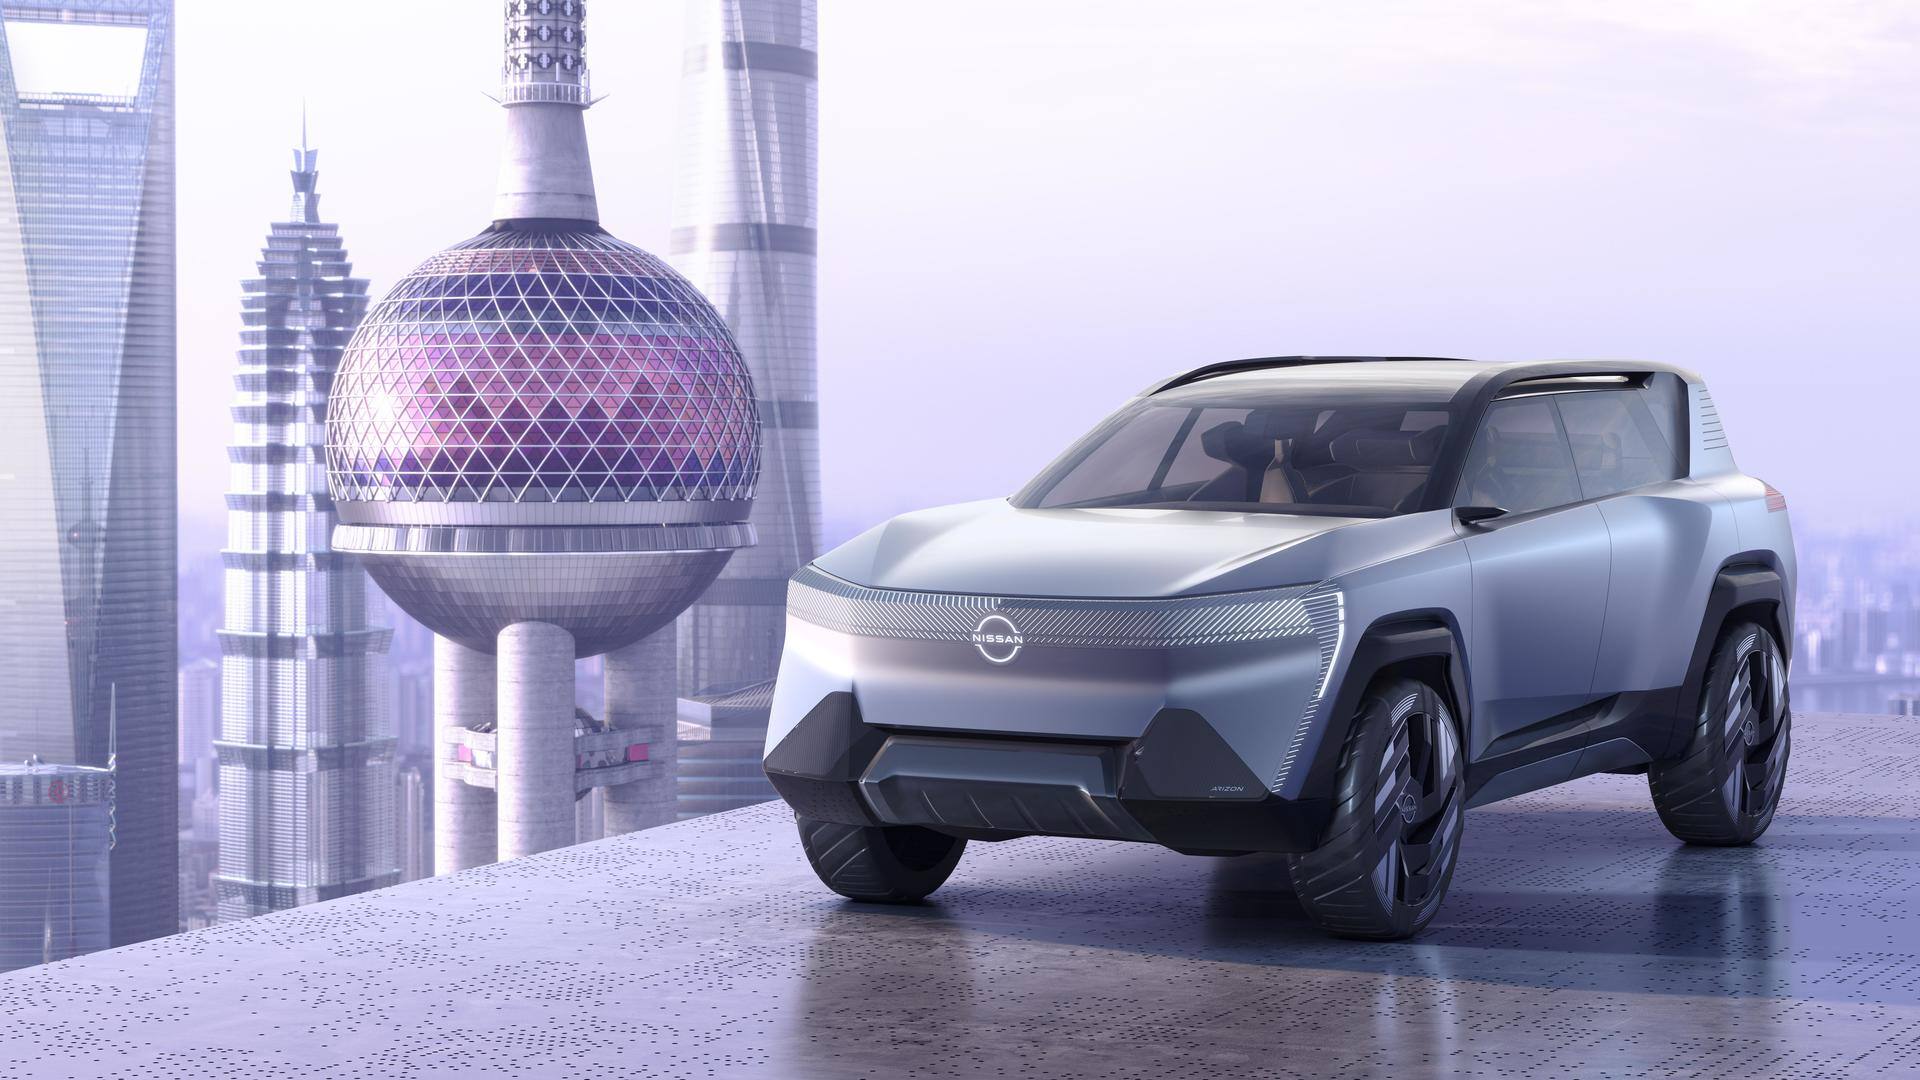 Nissan showcases its futuristic e-SUV design with the Arizon concept